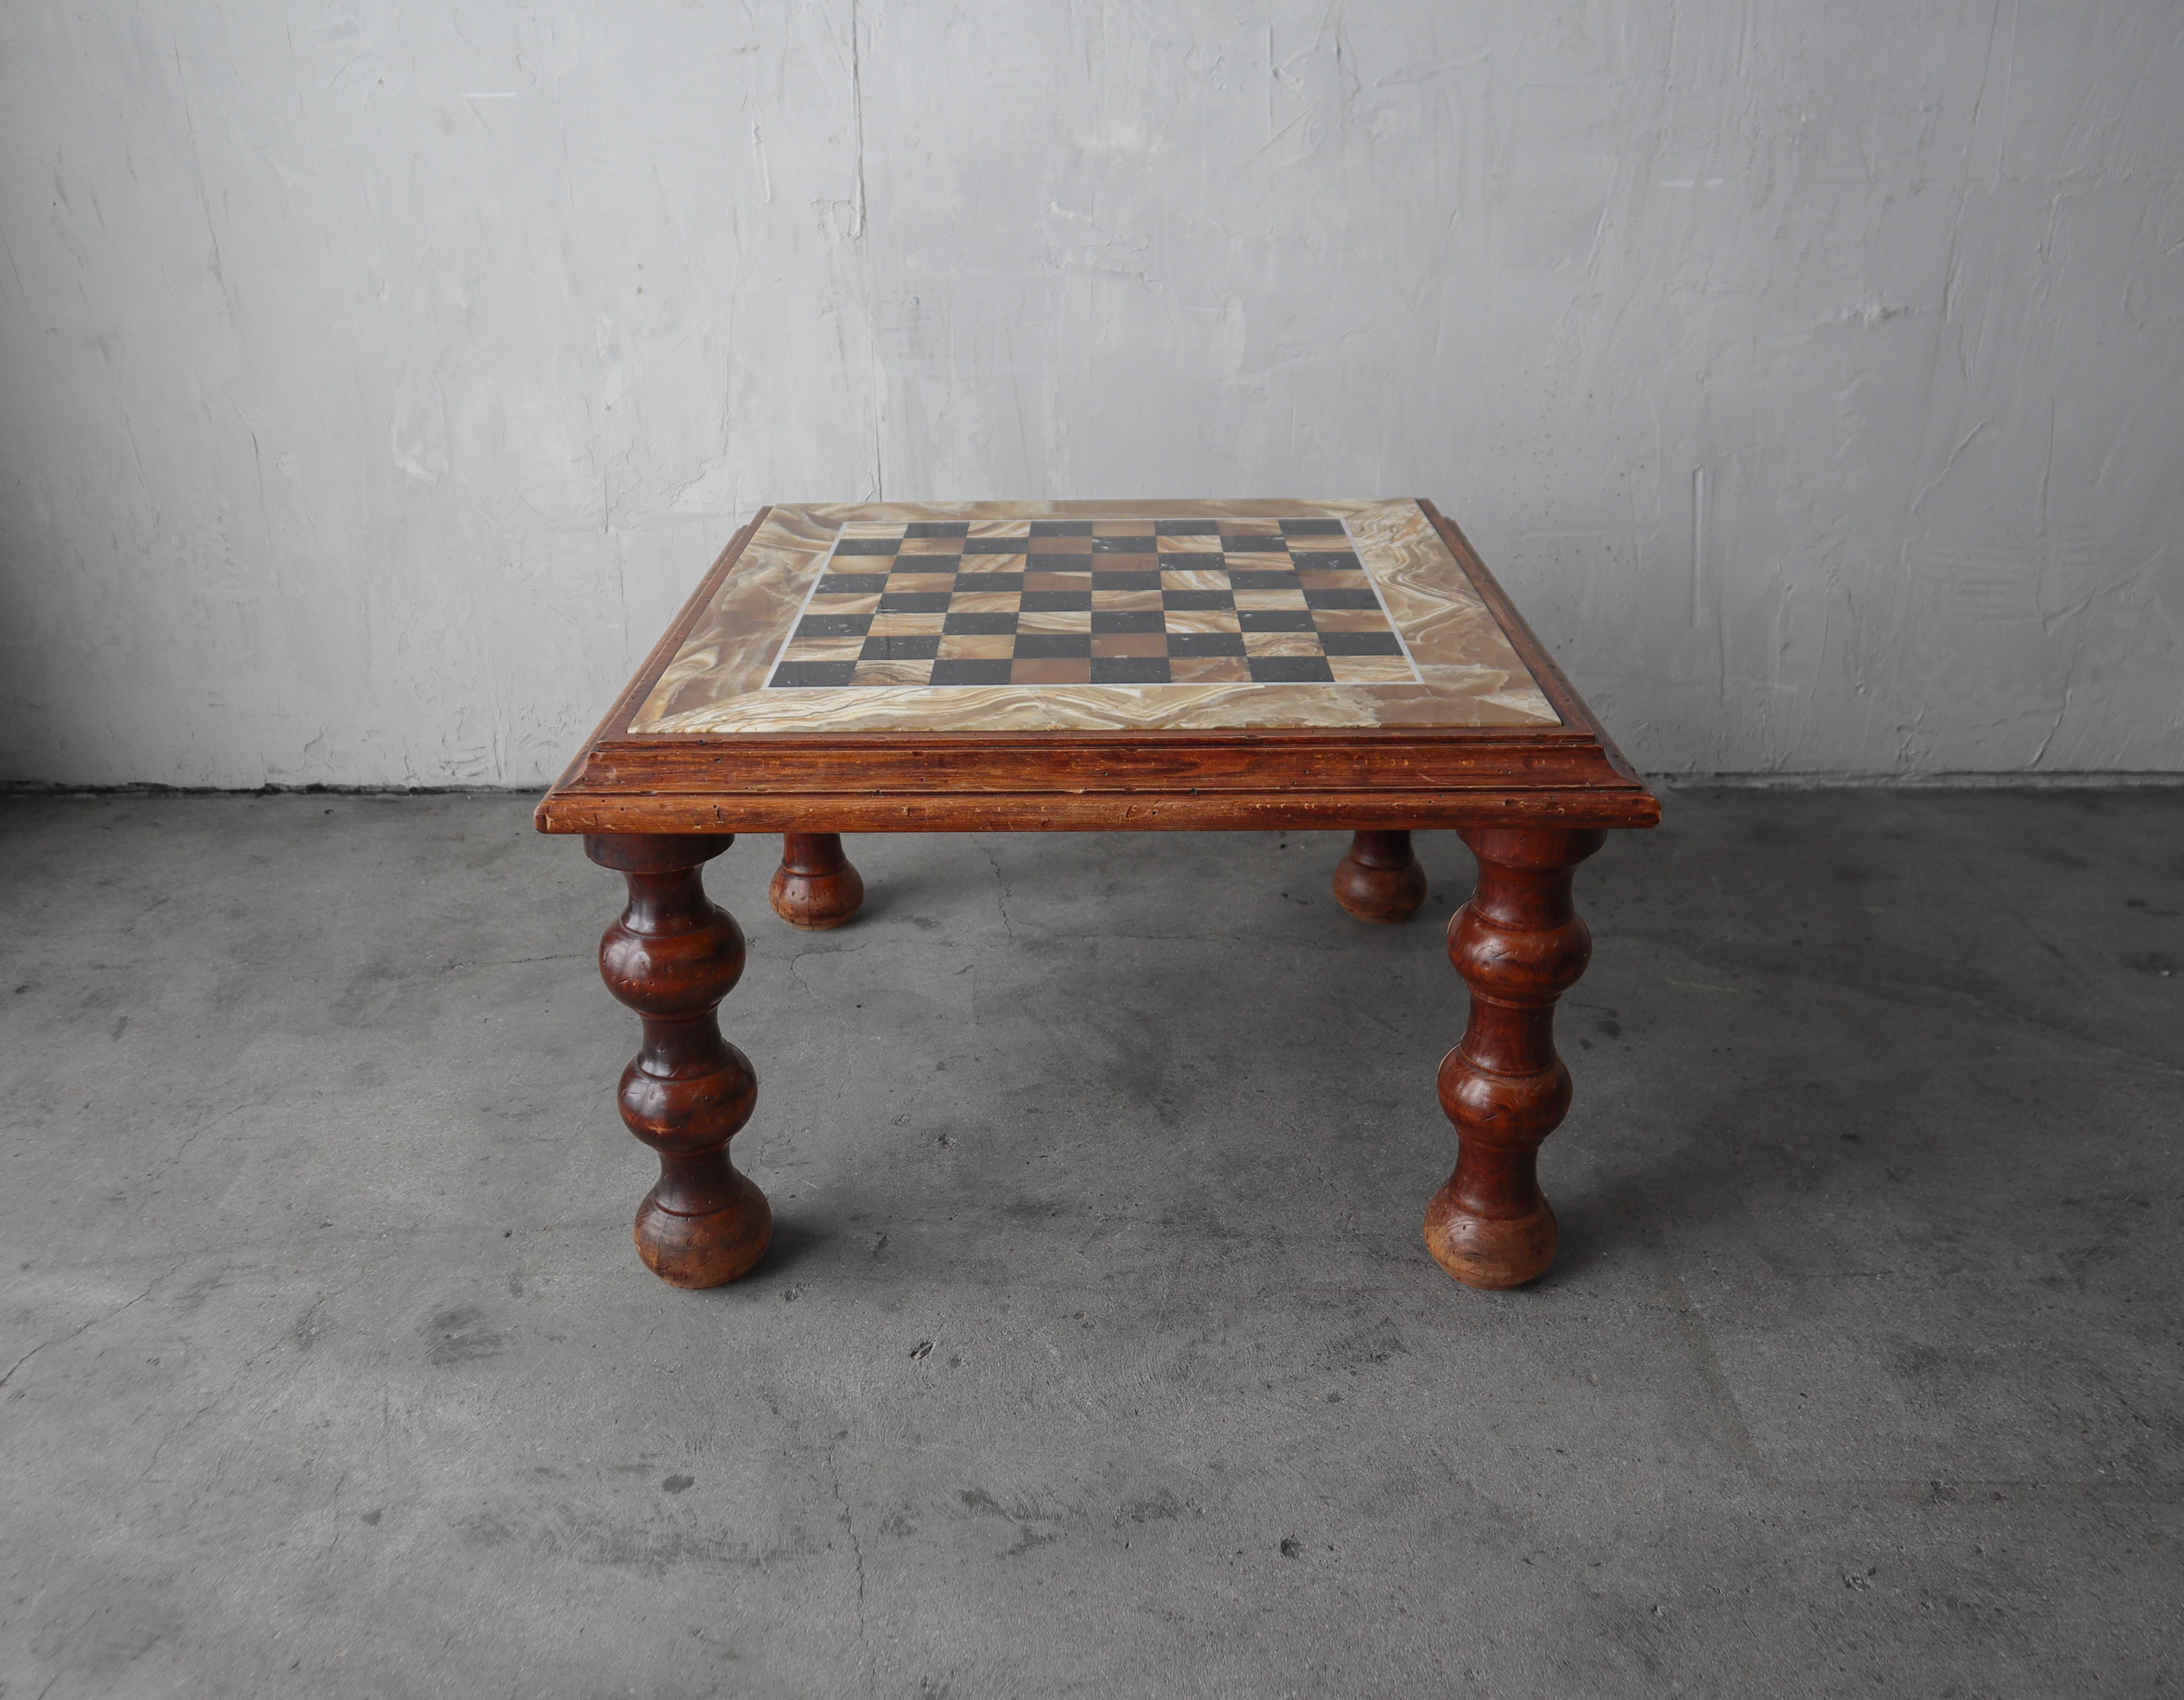 Wunderschöner antiker Spieltisch.  Ich liebe die handgedrechselten Beine und den schönen Honig-Onyx.  Ein wirklich einzigartiges Stück.  Der Tisch hat die Höhe eines Couchtisches und ist somit der perfekte Tisch zwischen 2 Stühlen.

Die Tabelle ist